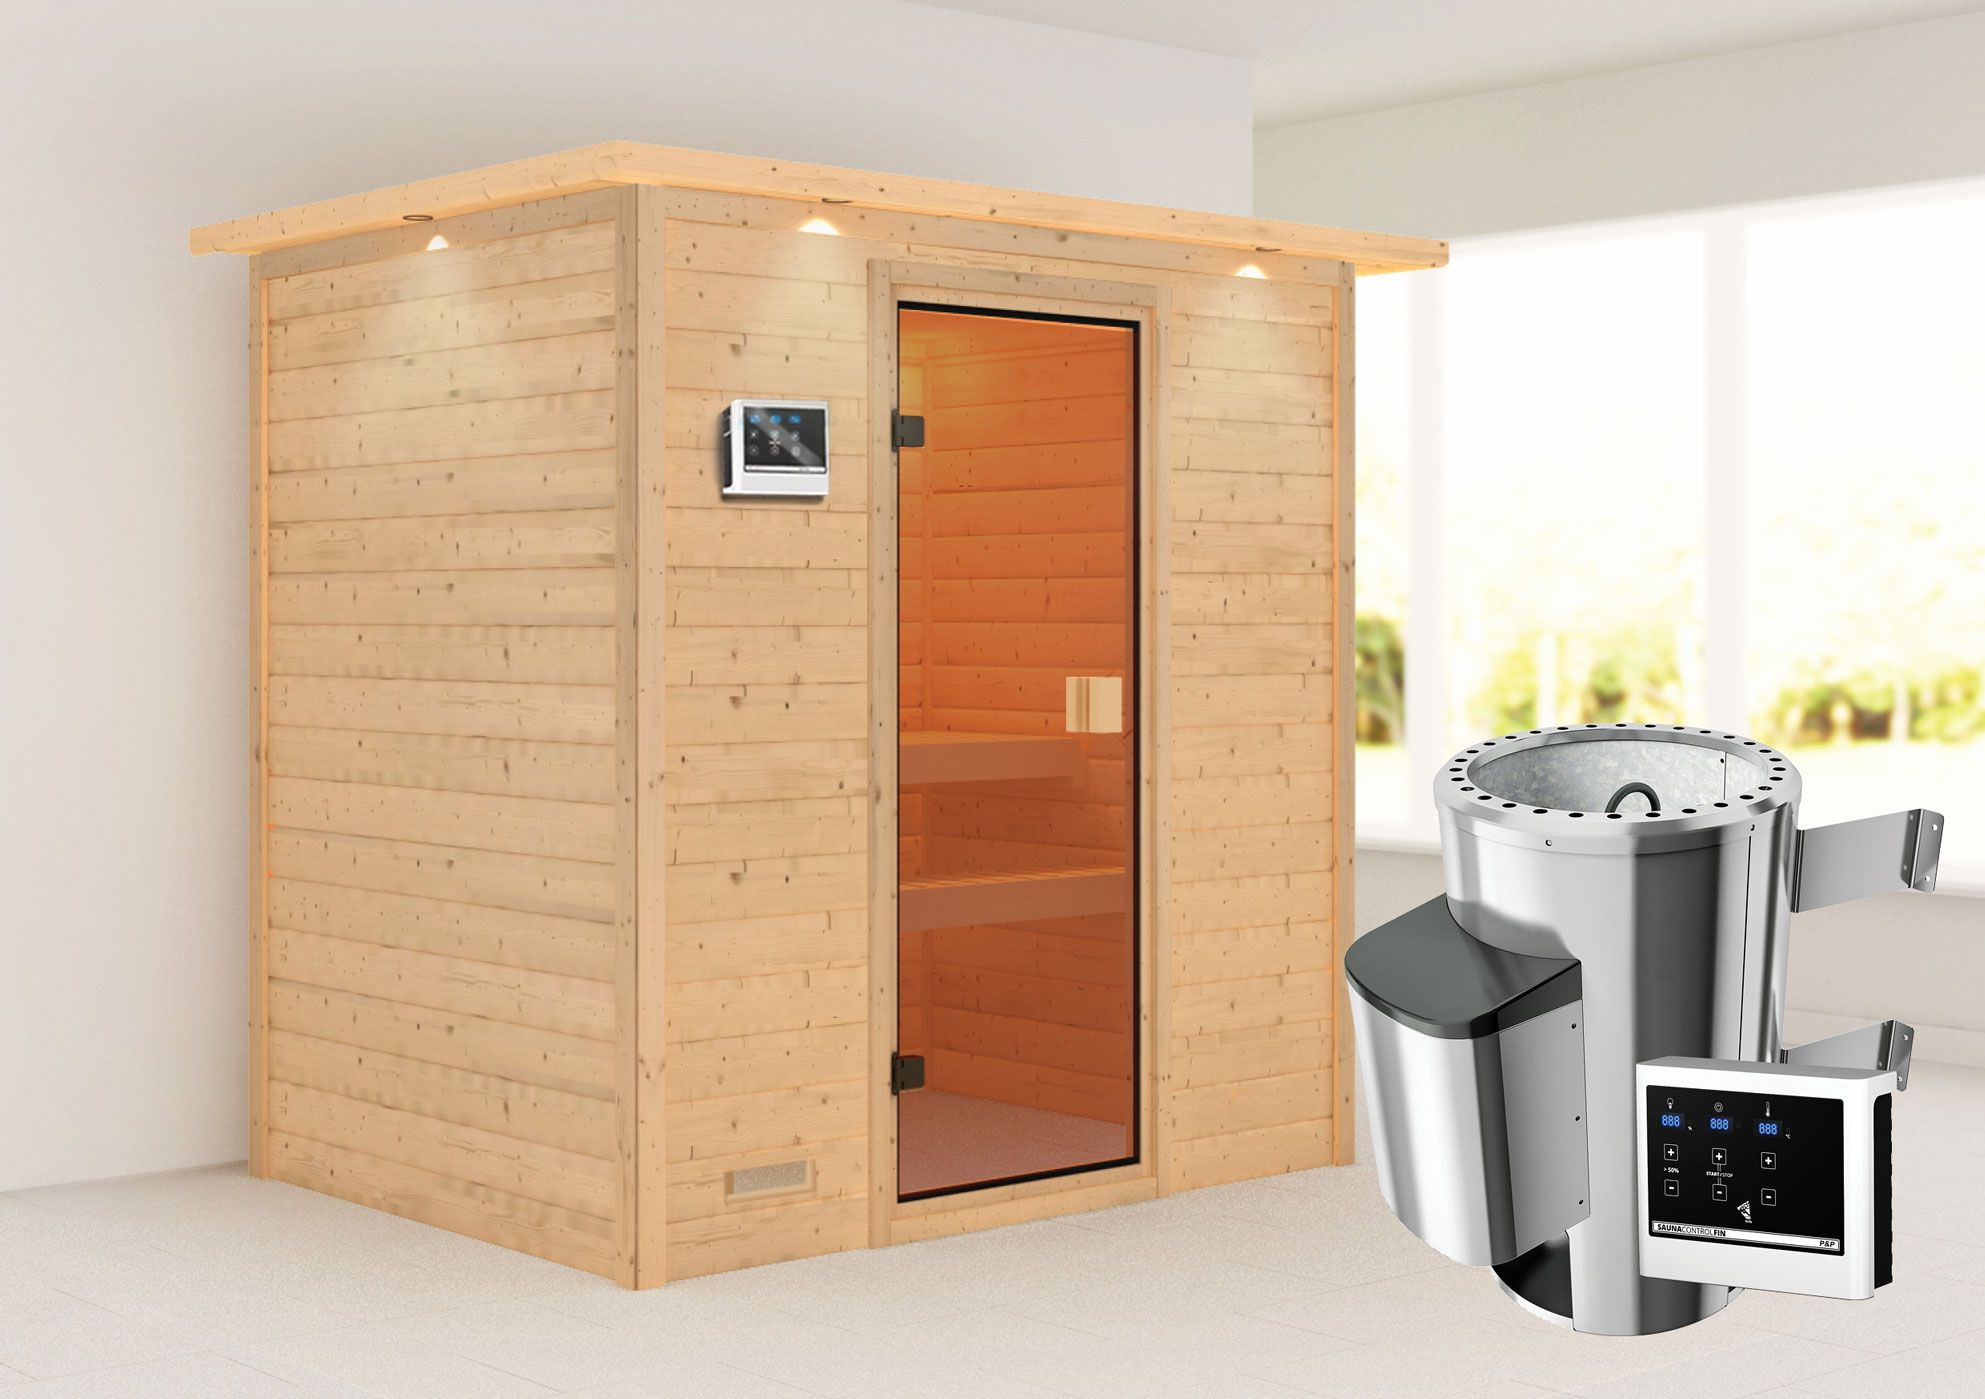 Sauna "Fynn" SET mit bronzierter Tür und Kranz - Farbe: Natur, Ofen externe Steuerung easy 3,6 kW - 223 x 159 x 191 cm (B x T x H)